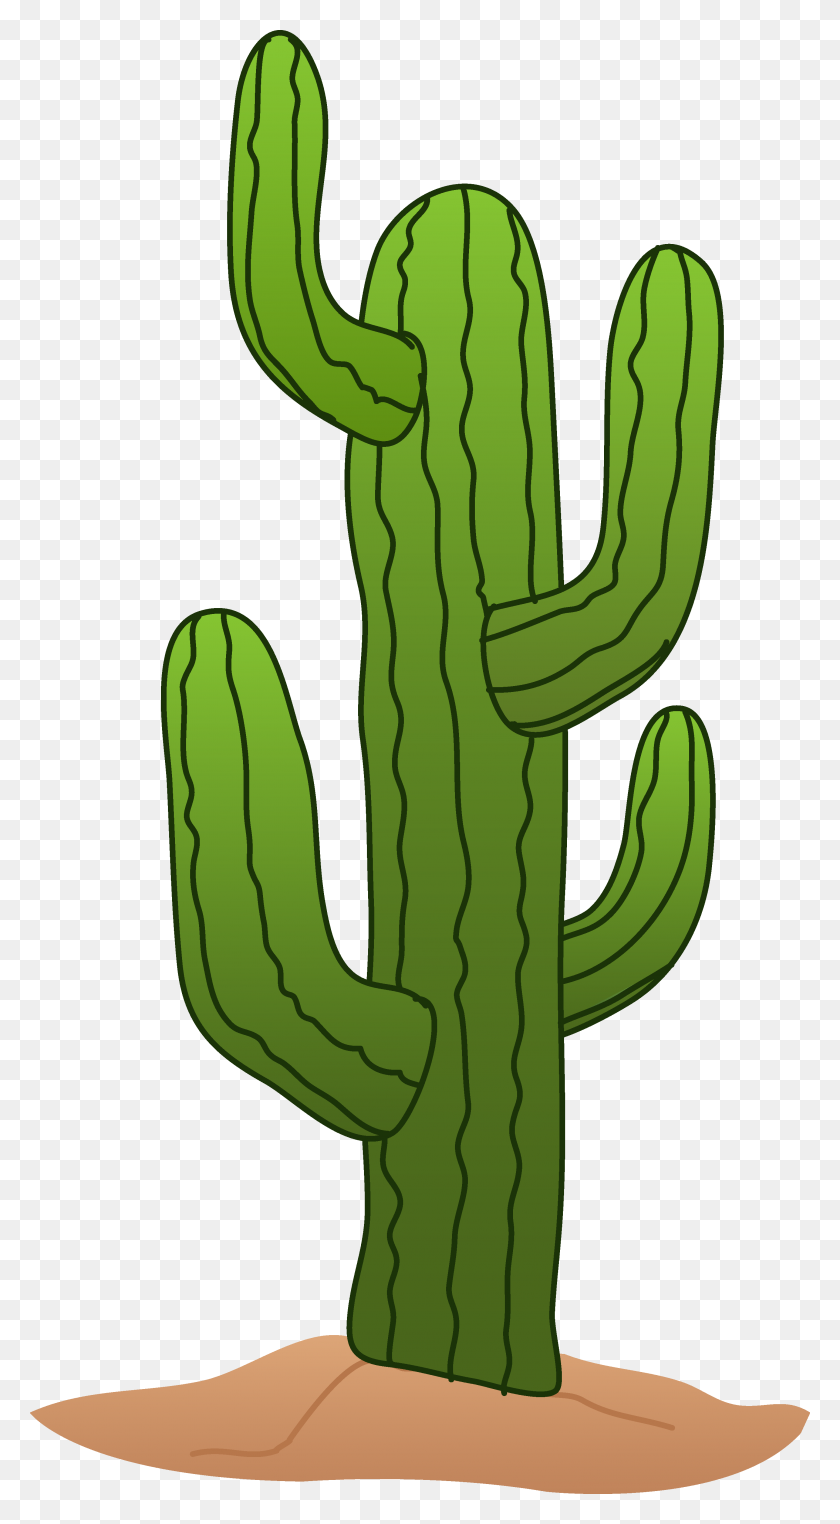 2889x5425 Mejores Imágenes De Imágenes Prediseñadas De Cactus - Imágenes Prediseñadas De Cactus Gratis